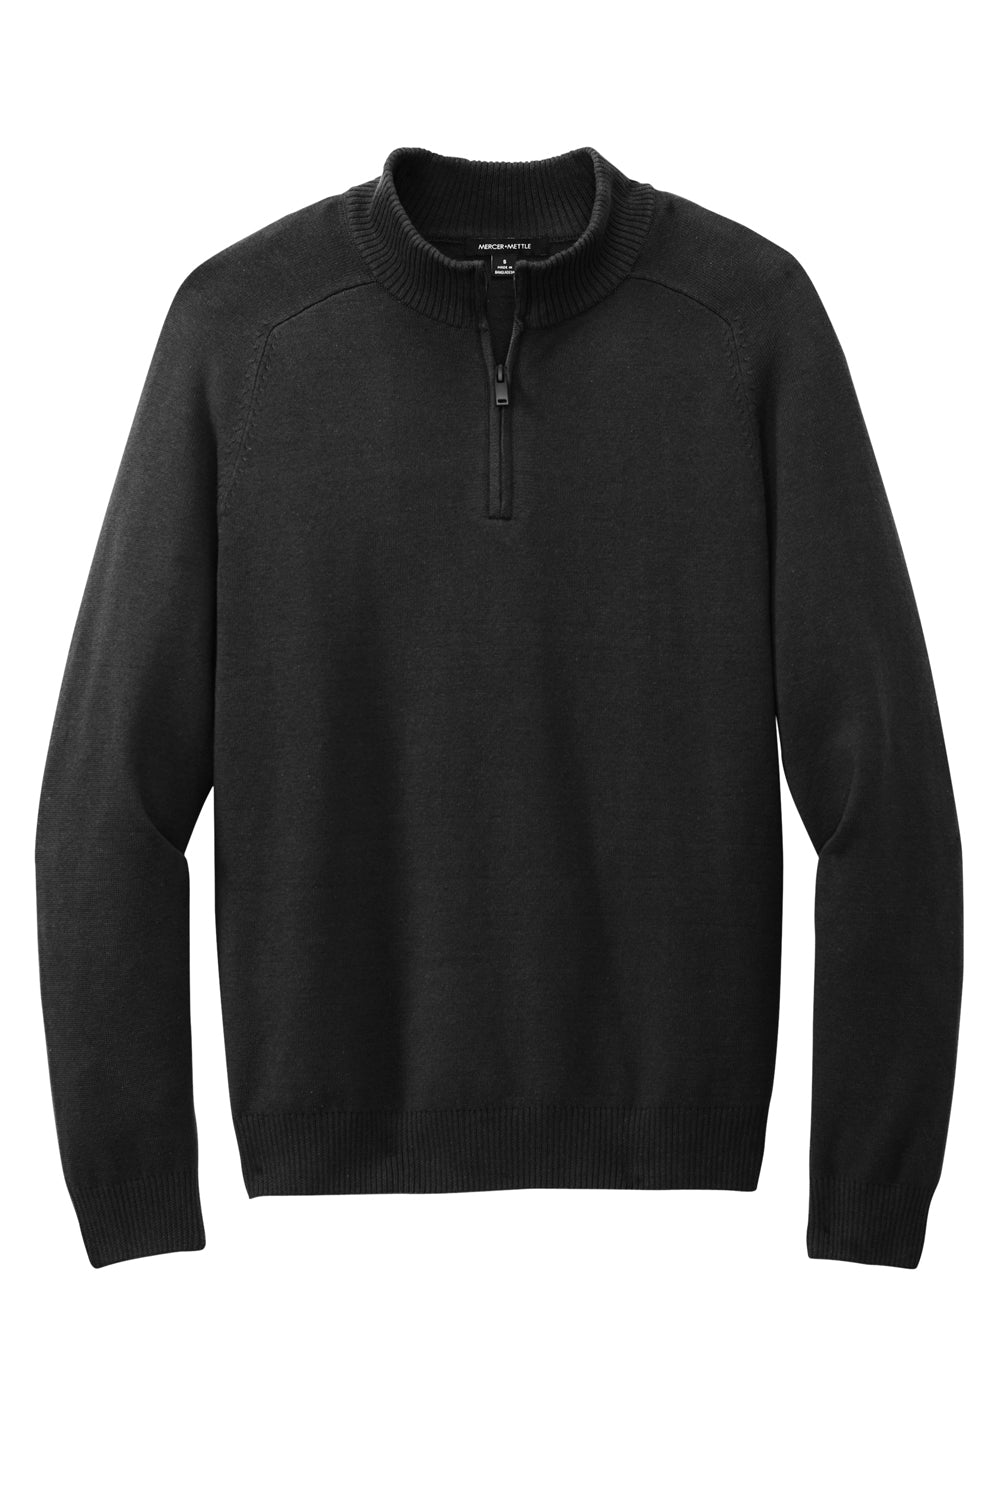 Mercer+Mettle MM3020 Mens 1/4 Zip Sweater Deep Black Flat Front